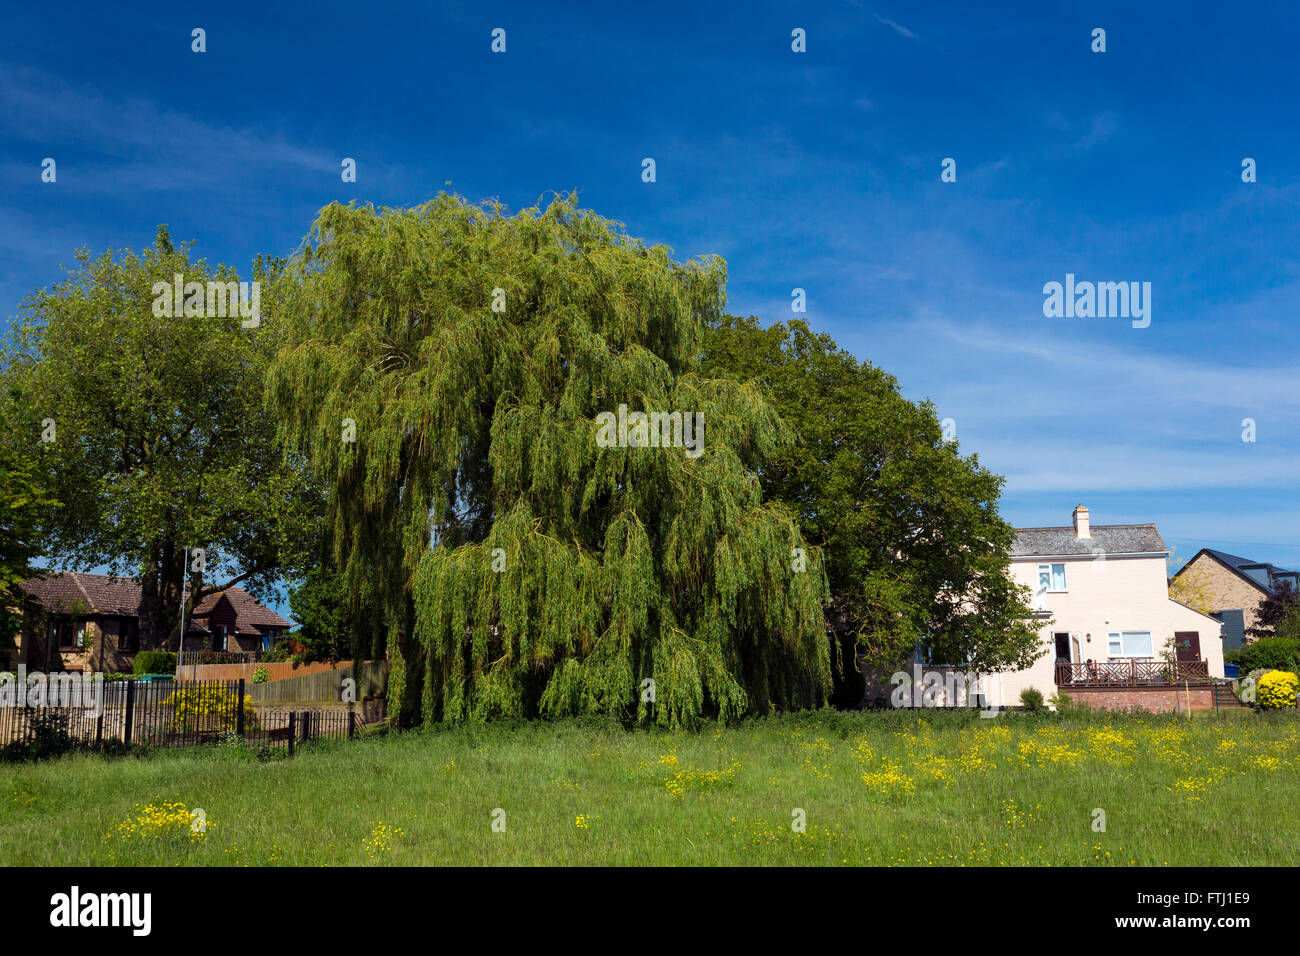 willow tree Salix alba Vitellina-Tristis Stock Photo